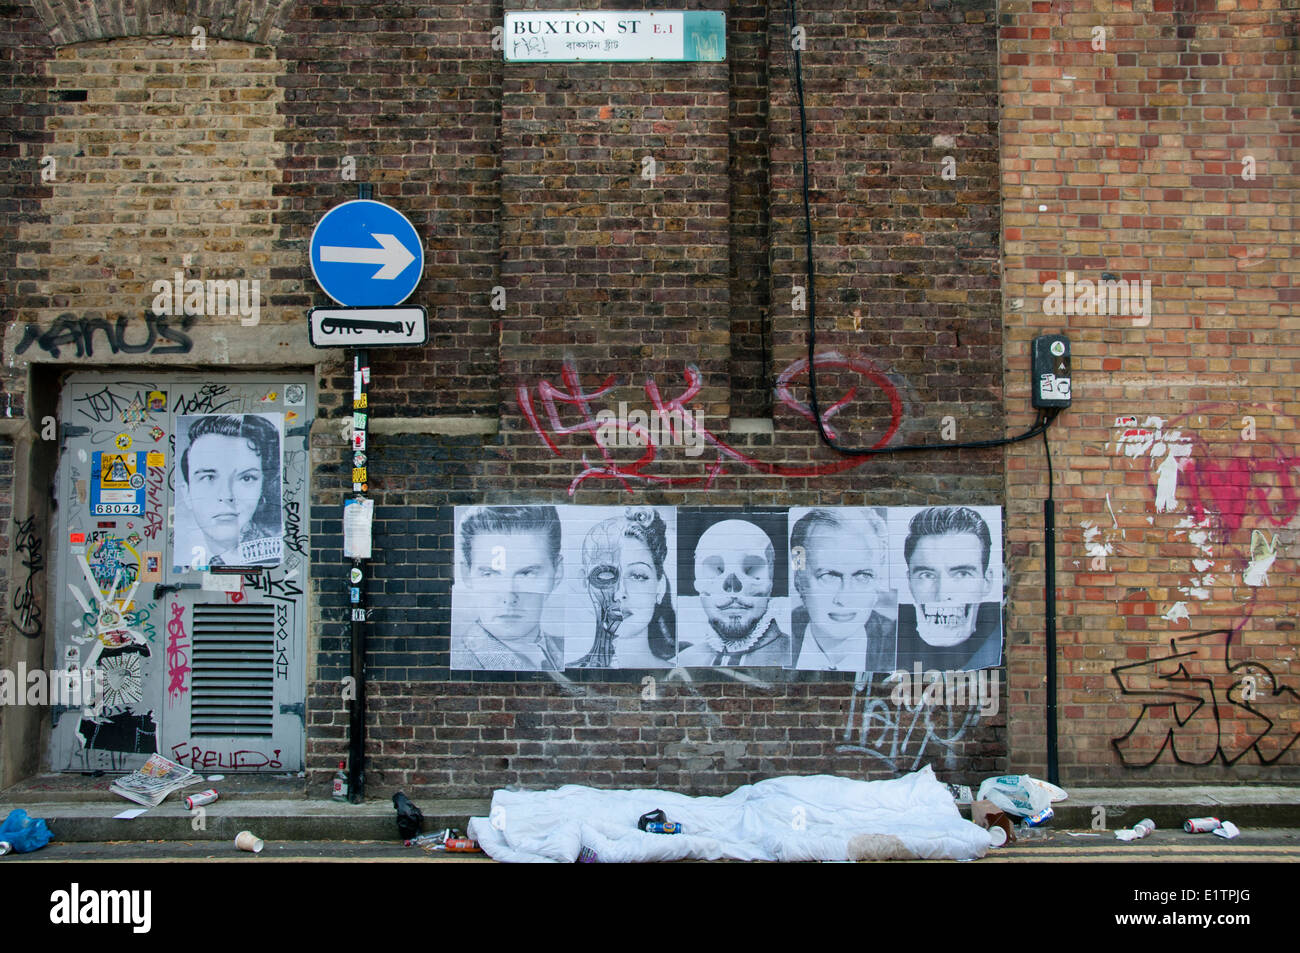 Buxton Street, près de Brick Lane, East London. 8 juin 2014. Dormir dans le caniveau. Couette abandonnés et des canettes de bière. Banque D'Images